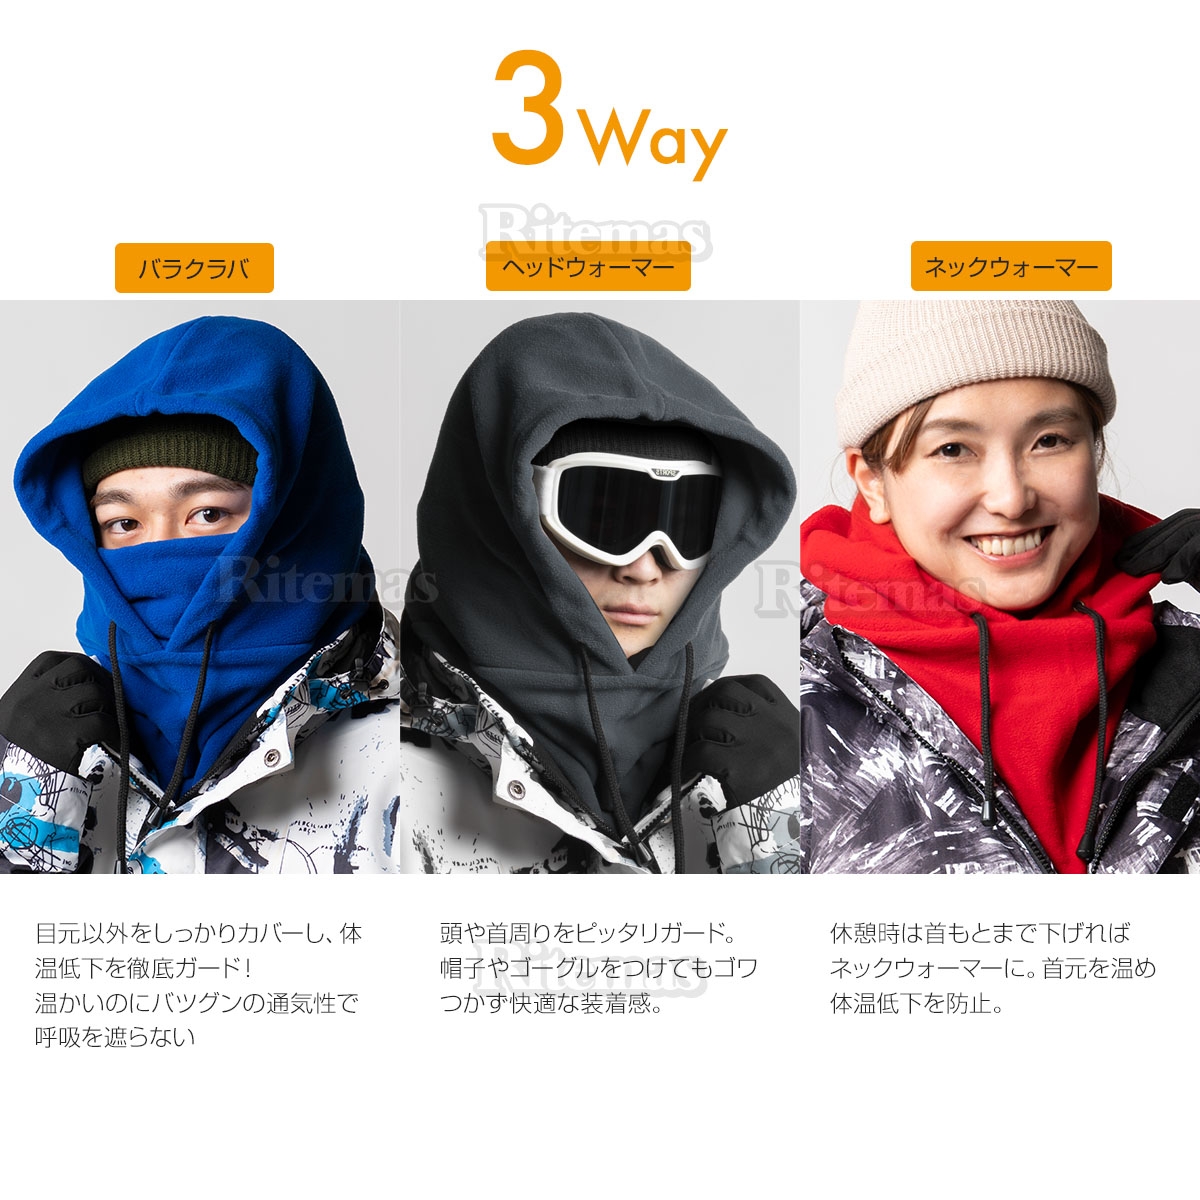  капот утеплитель маска для лица защита горла "neck warmer" 3way склеивание флис лицо покрытие шляпа сноуборд лыжи сноуборд свободный размер защищающий от холода 9 цвет 